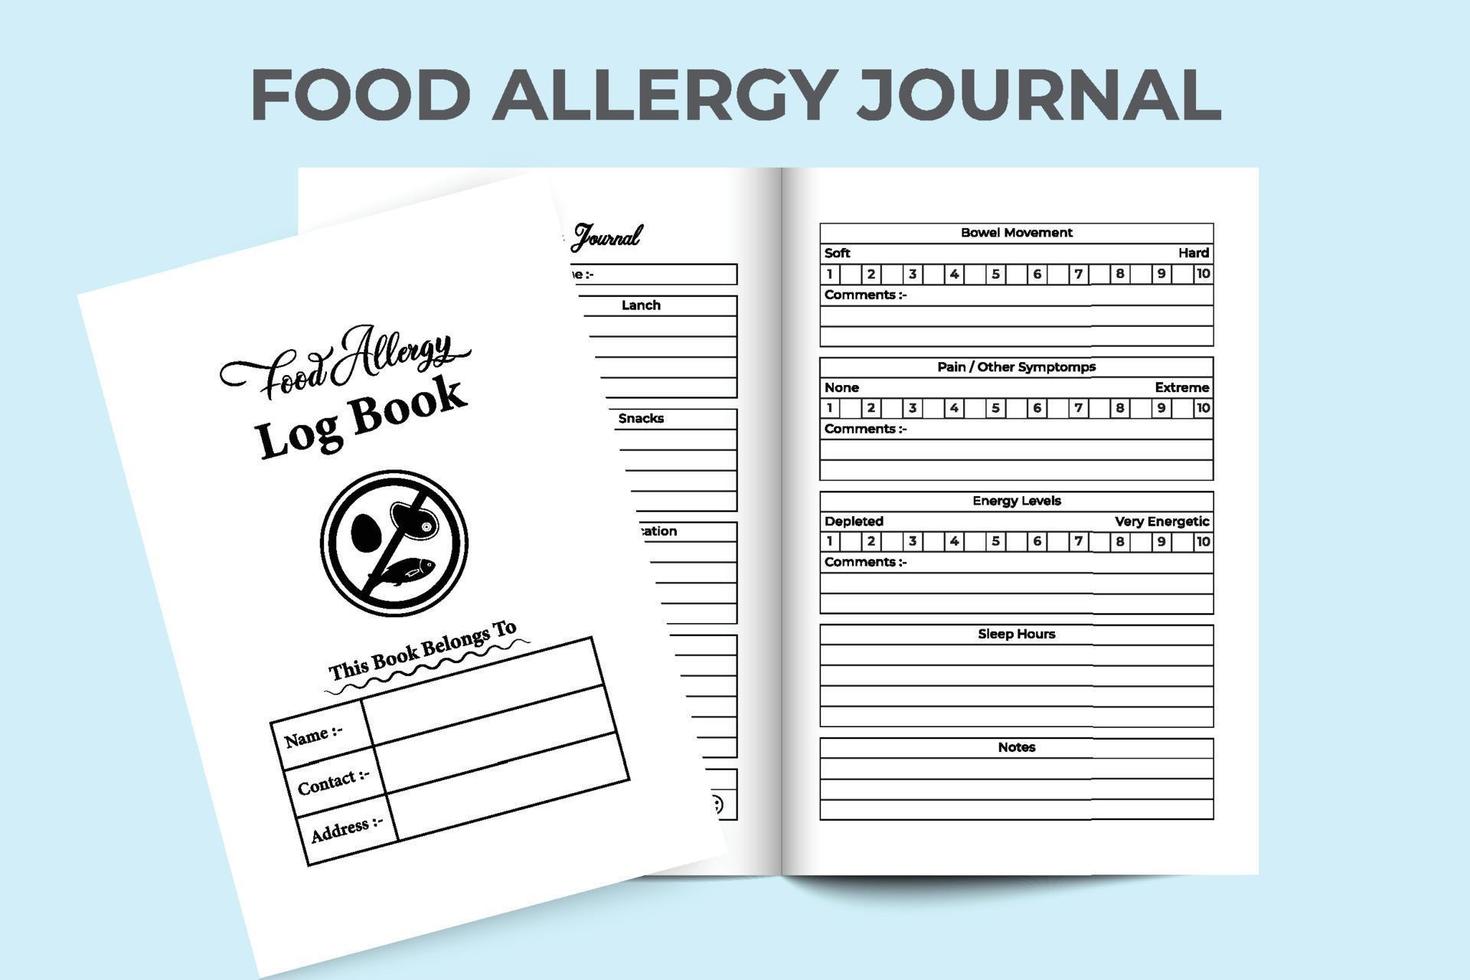 intérieur du carnet d'allergies alimentaires. modèle de journal de vérification de la routine alimentaire quotidienne et des symptômes d'allergie. l'intérieur d'un journal de bord. carnet de médicaments contre les allergies alimentaires et journal de suivi de la douleur. vecteur